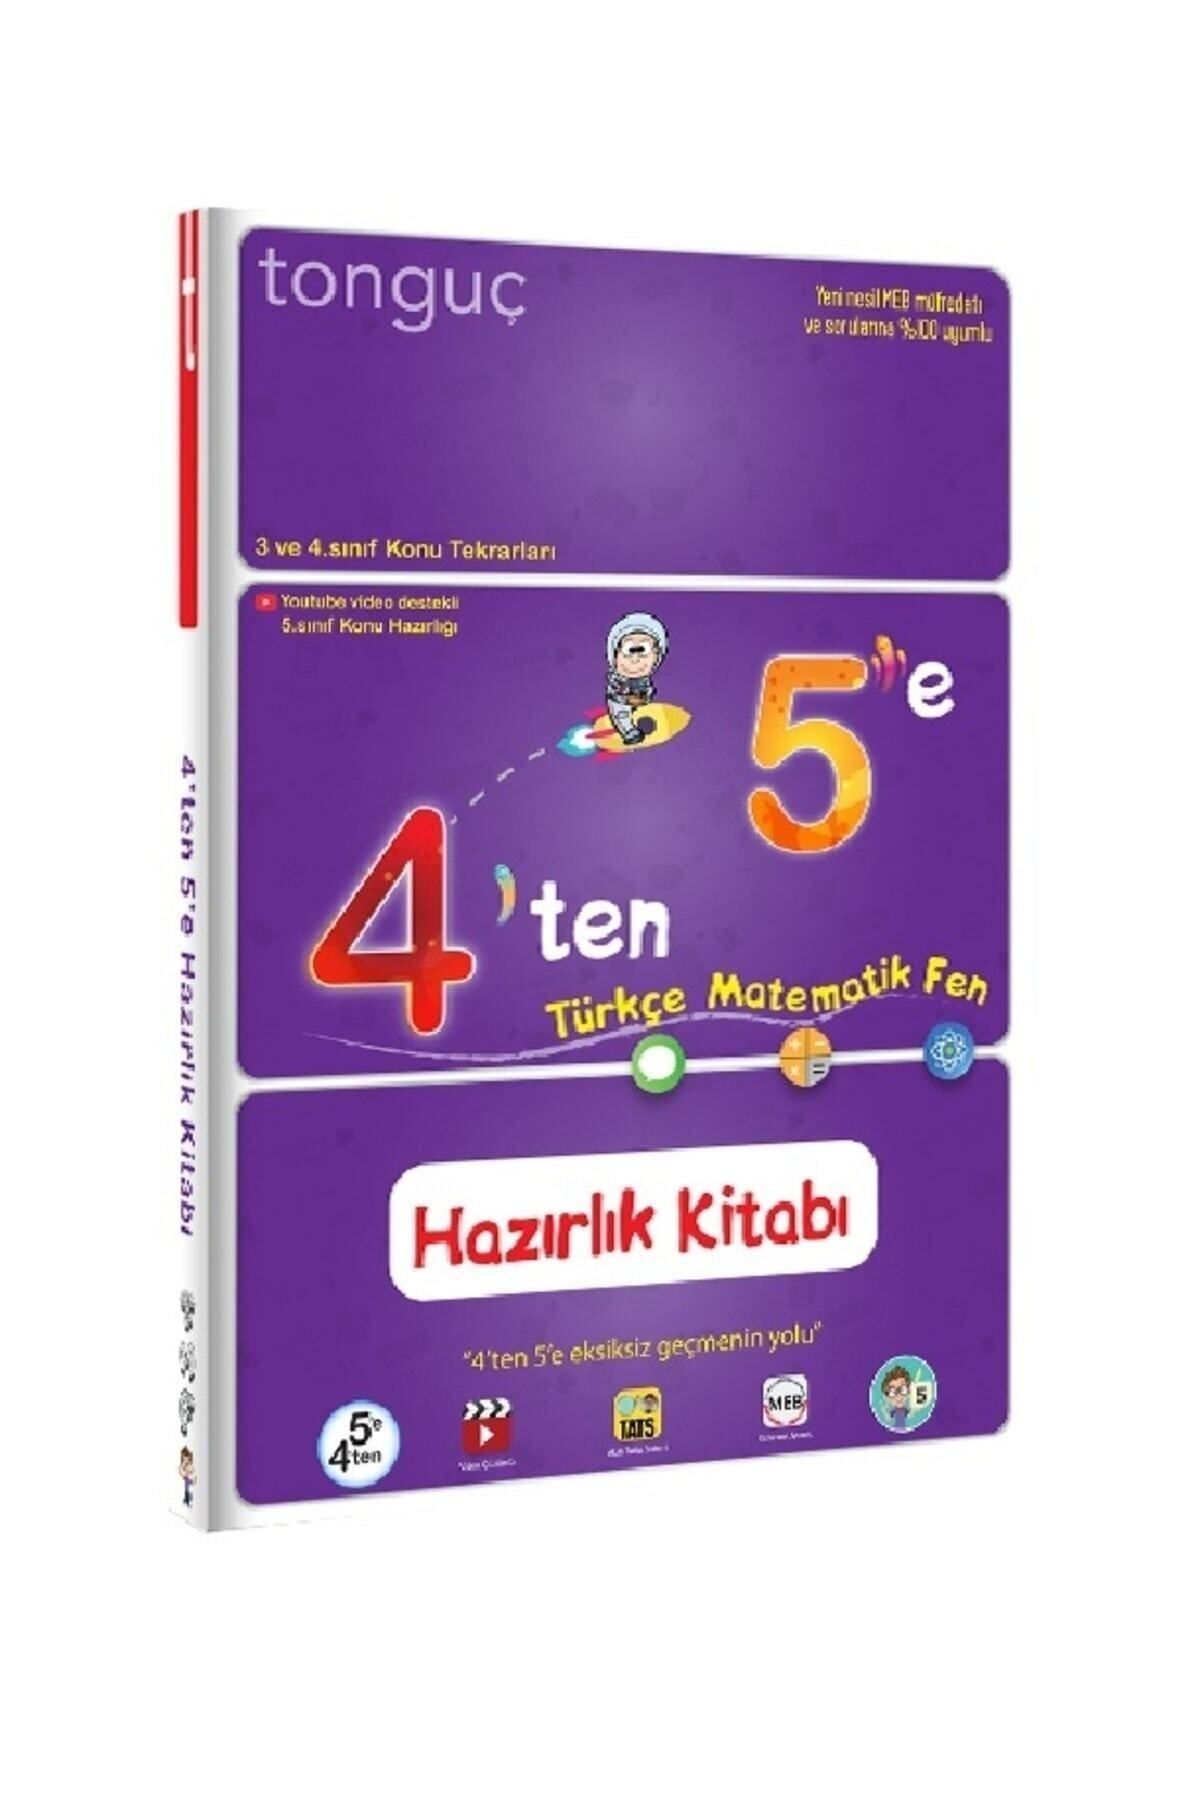 Tonguç Yayınları 4'ten 5'e Hazırlık Kitabı Tonguç Kitabı